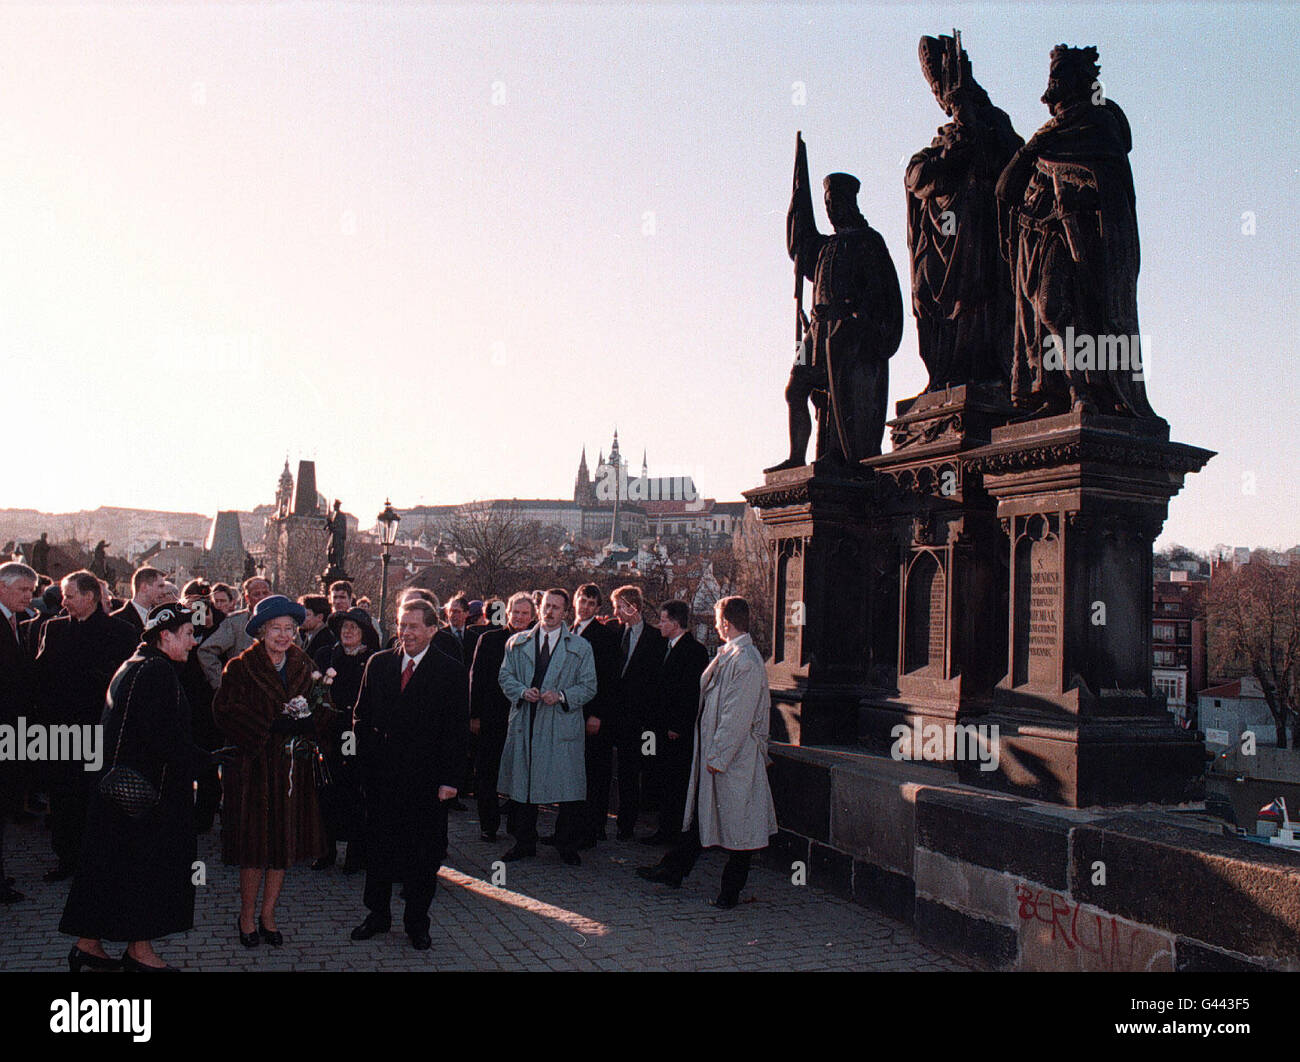 La Regina e il Presidente Havel sorridevano le grandi folle sotto la statua di San Venceslao sul Ponte Carlo, dopo una passeggiata sulla storica traversata di Praga. La Regina era appena arrivata nella Repubblica Ceca dopo aver lasciato la Polonia. Foto Stock